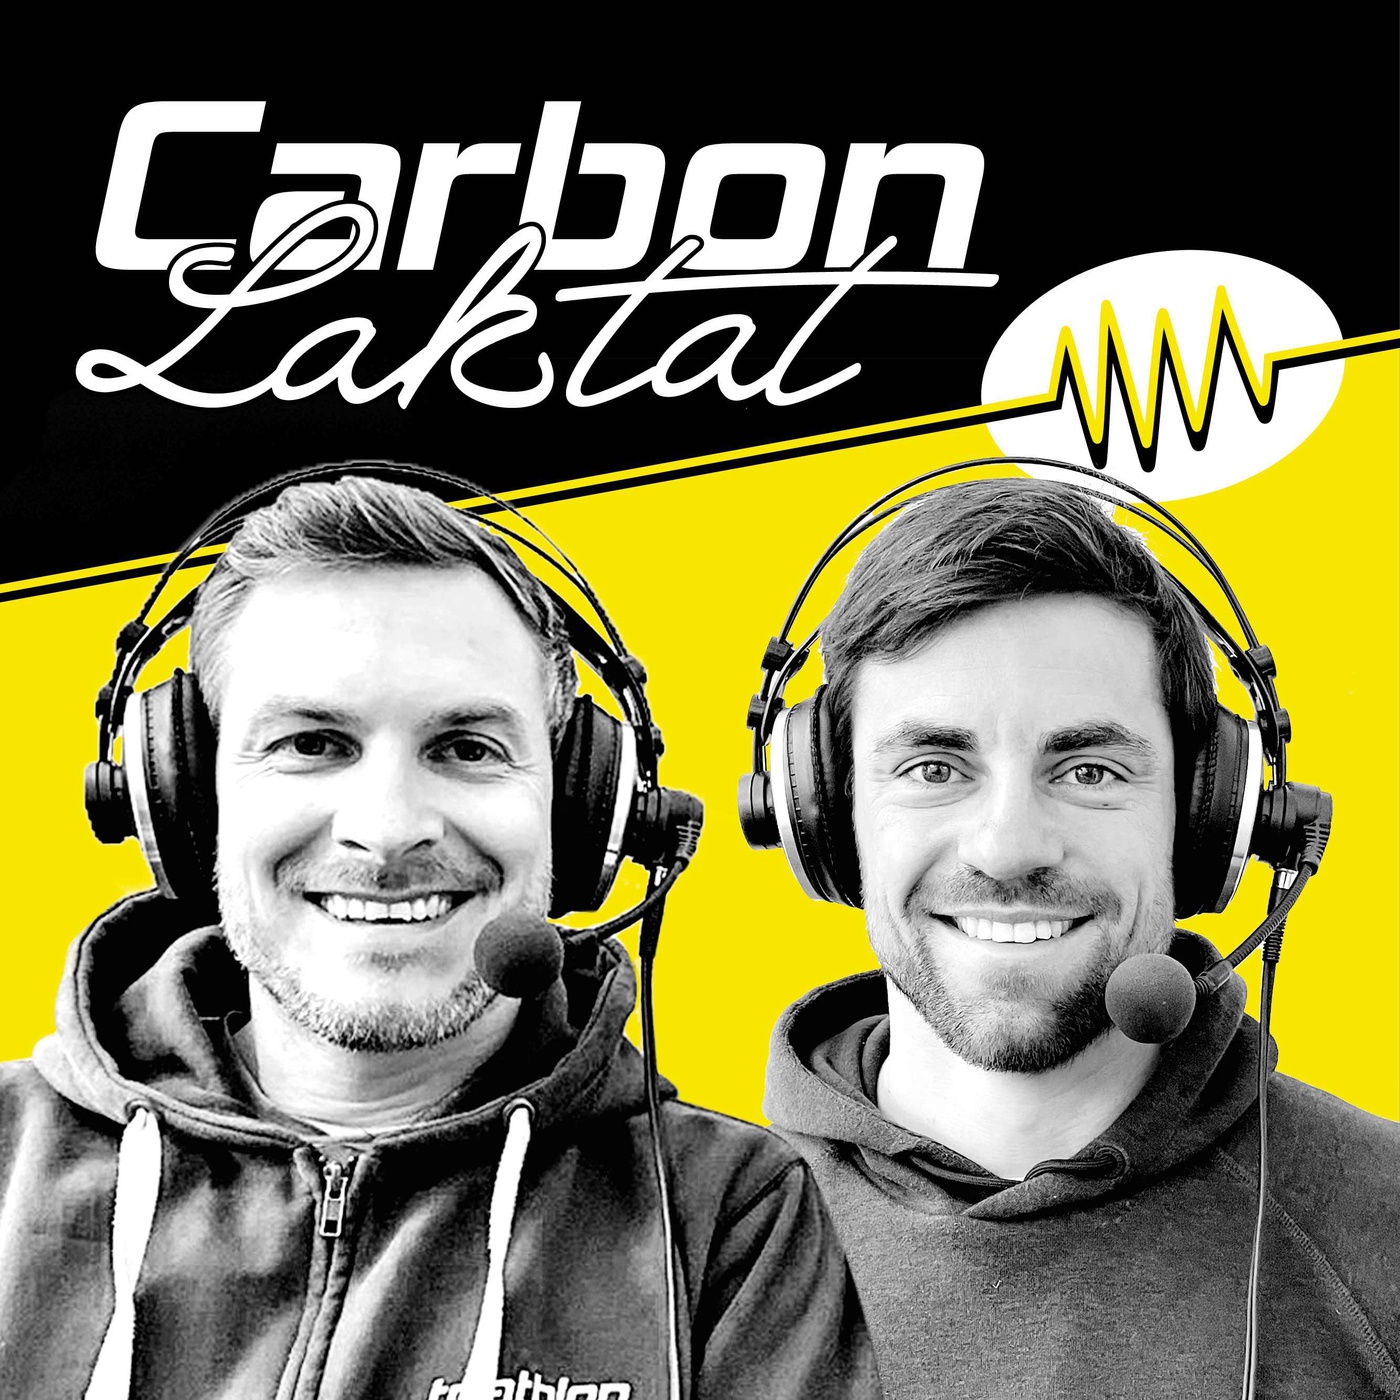 Carbon & Laktat: Erfolgreiche Premieren und heiße Action